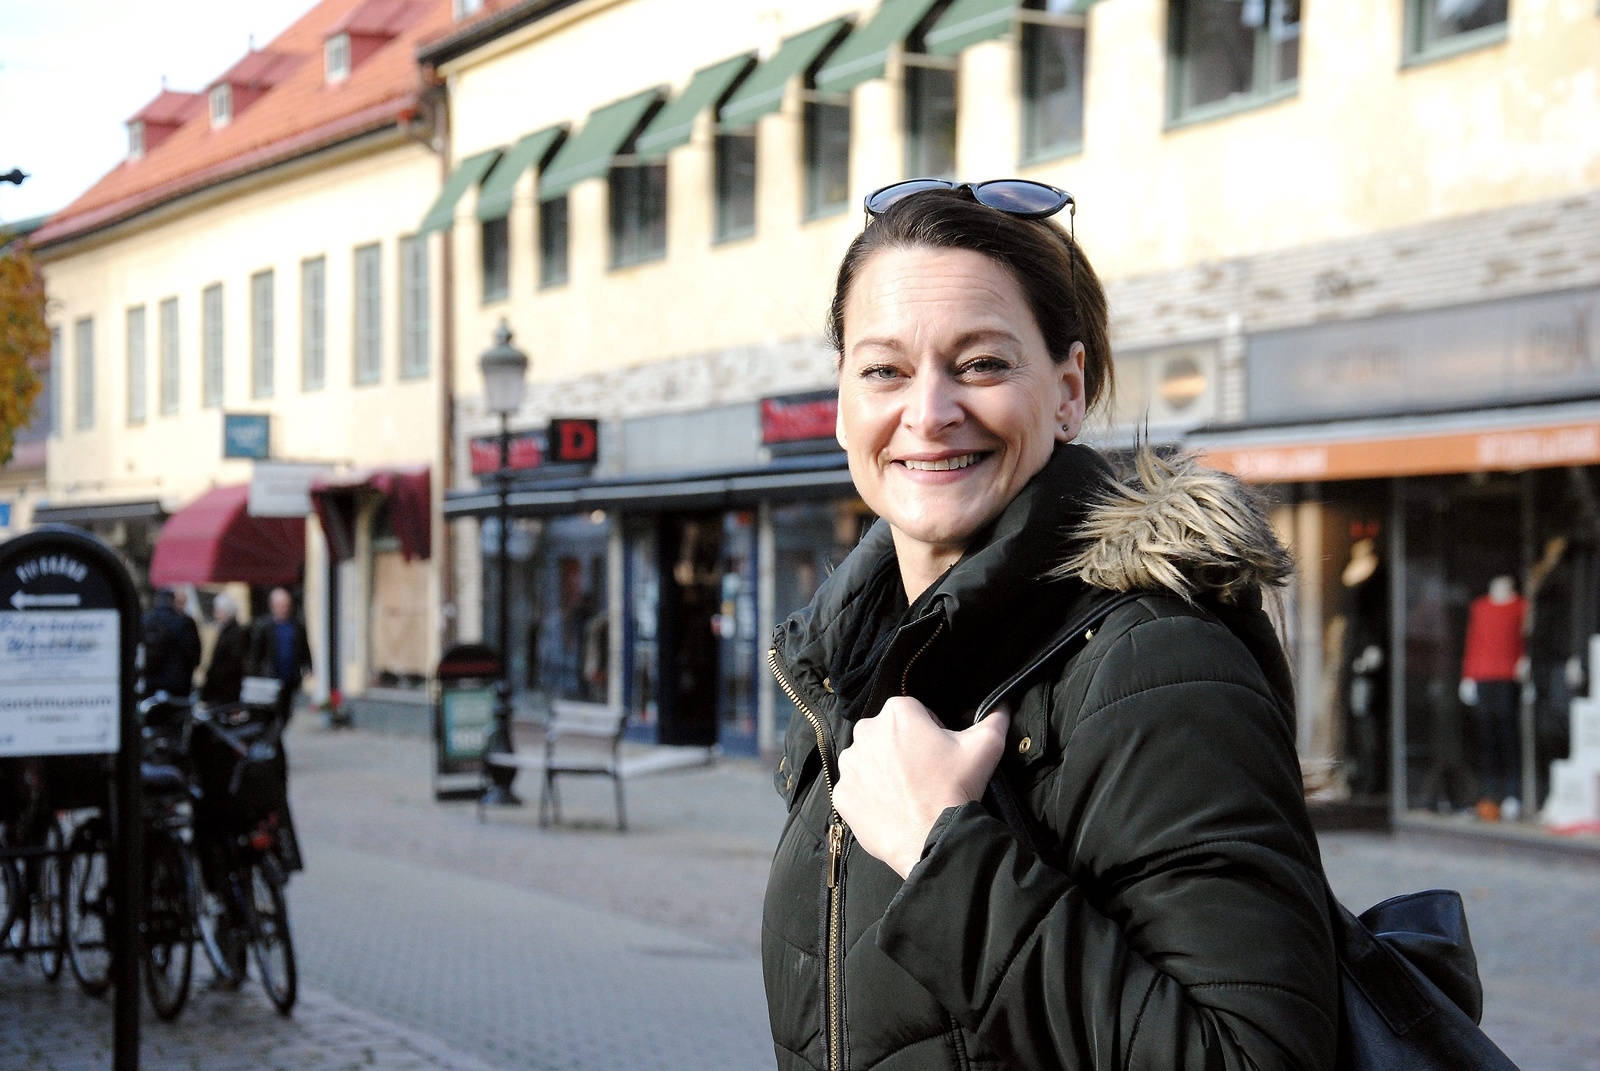 Jessica Aleryd är påläst när det gäller sin hemstads historia.
Foto: Håkan Jacobsson